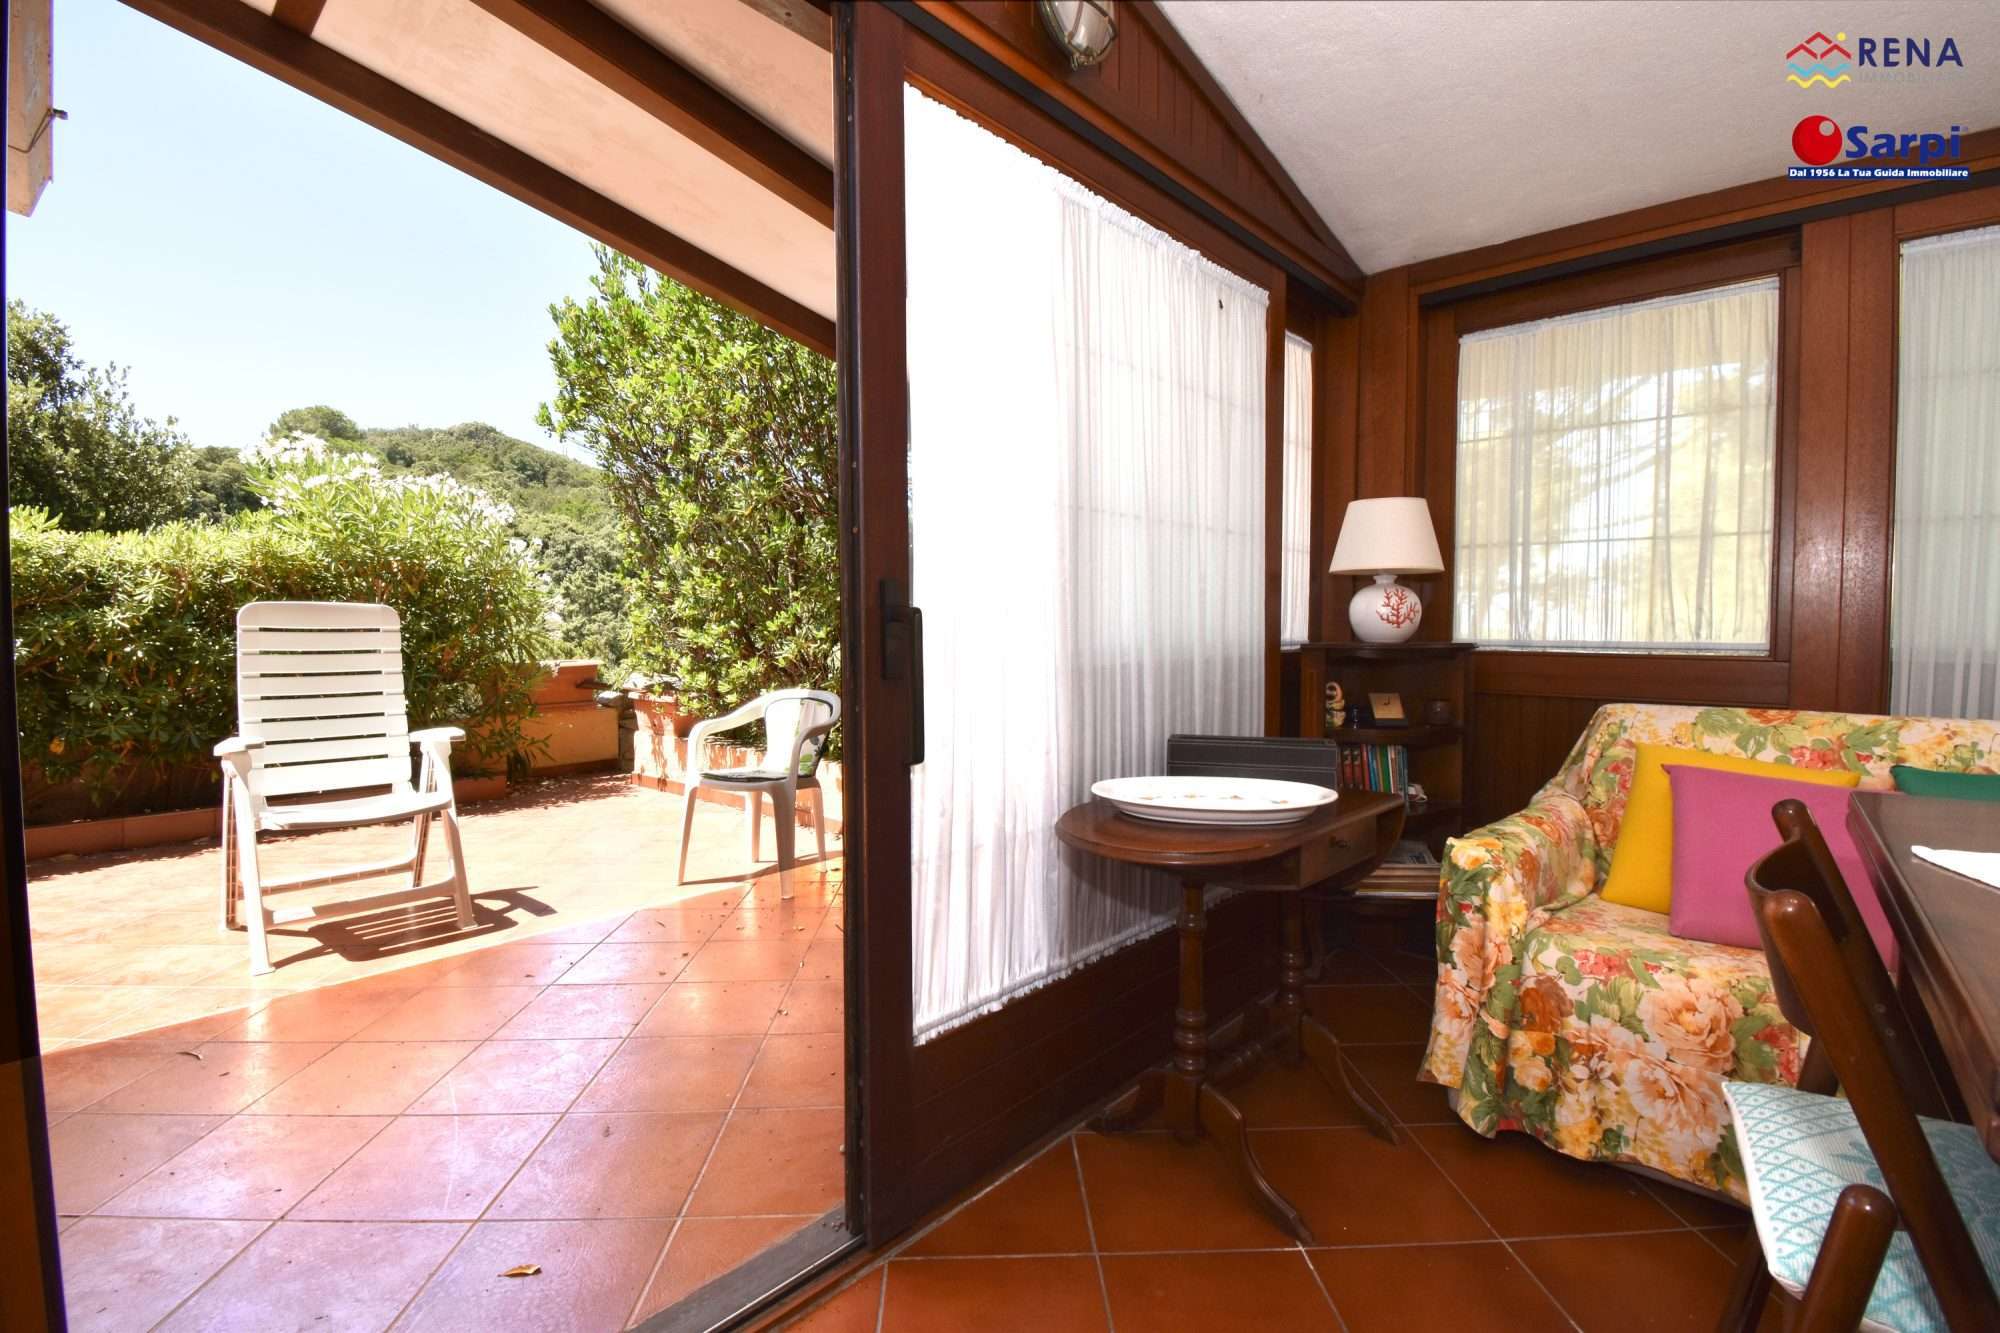 Villetta a schiera con veranda e giardino – Rena Majore